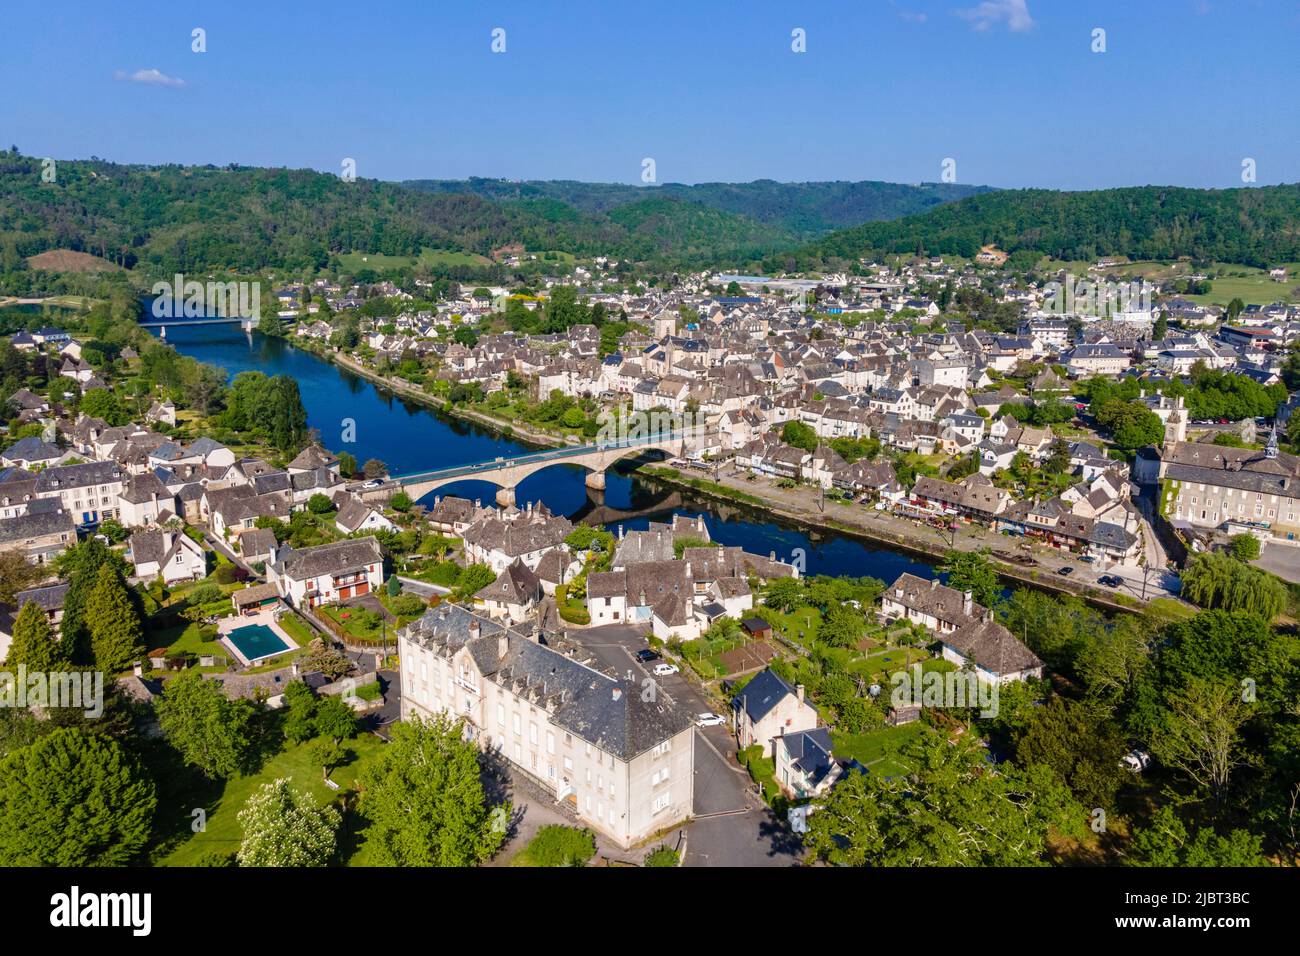 France, Correze, Argentat sur Dordogne (aerial view) Stock Photo